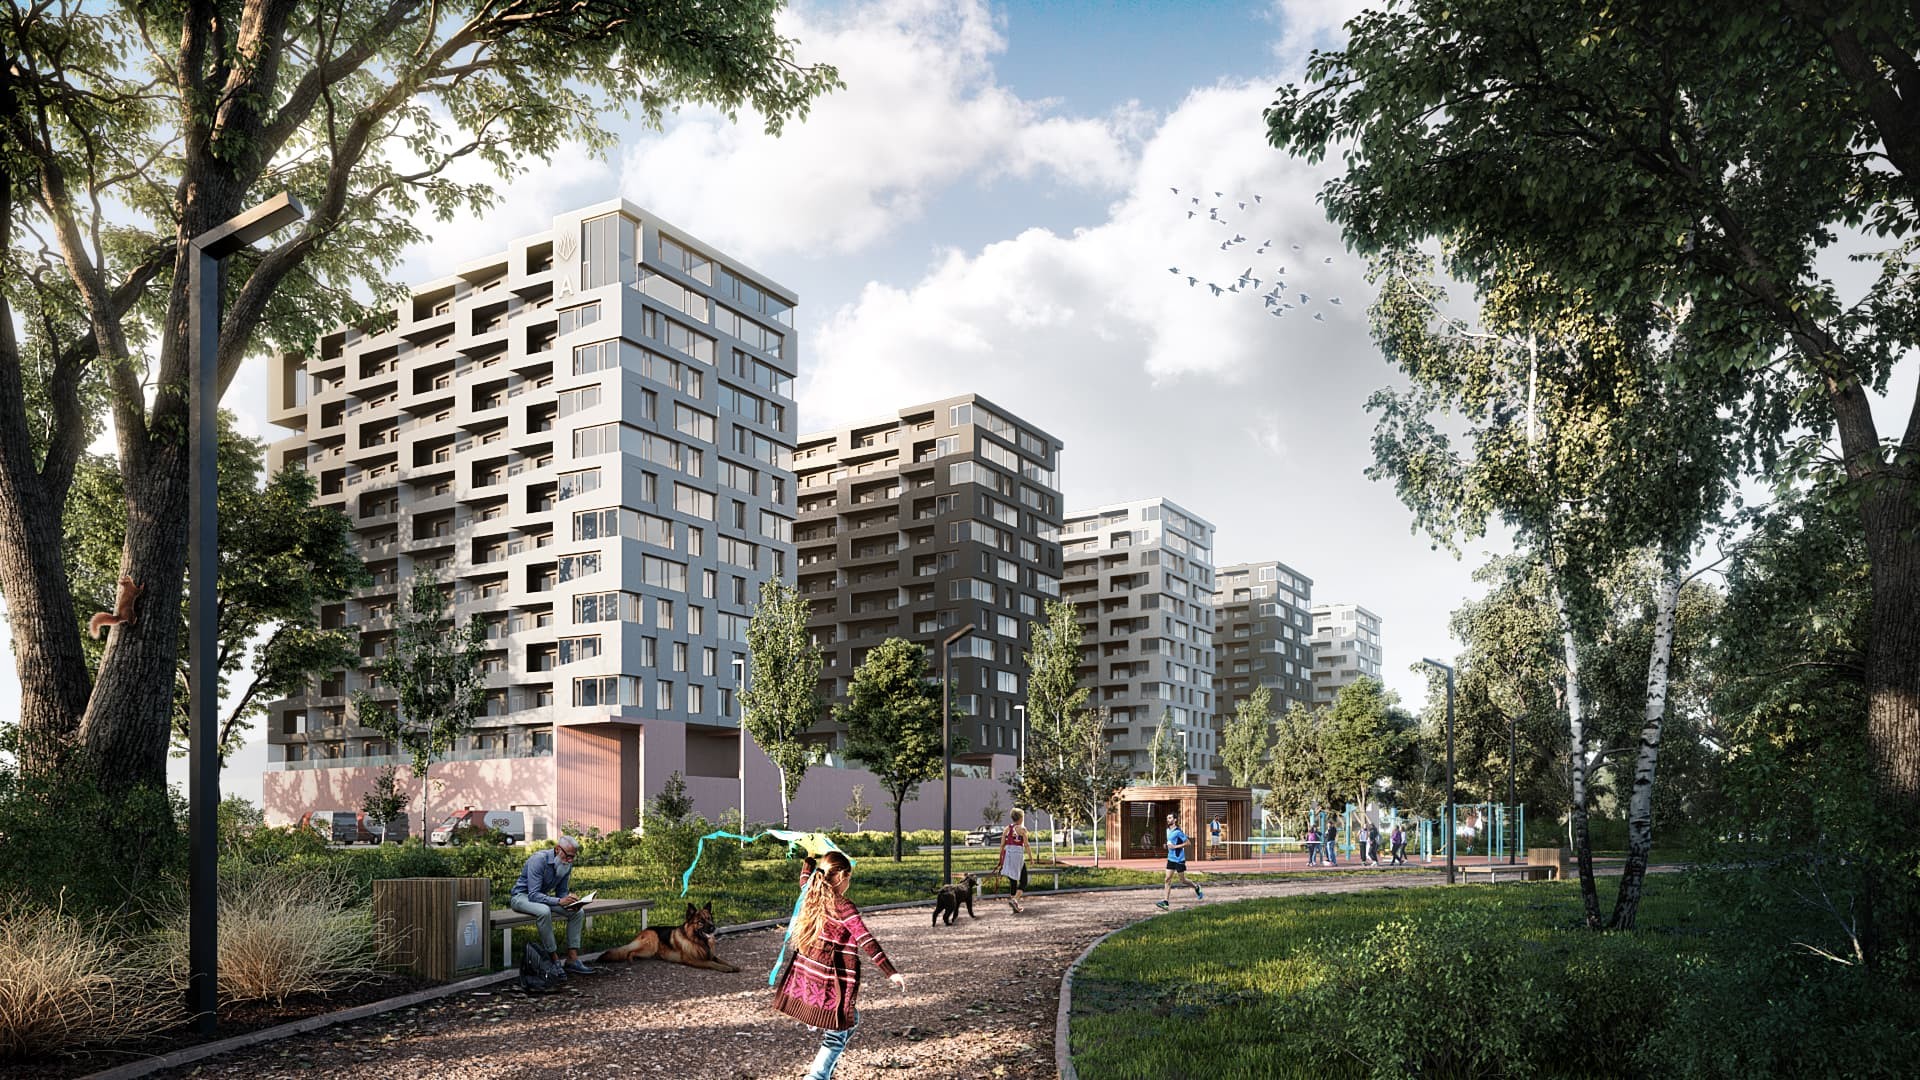 Łódź jest jedną z naszych ulubionych lokalizacji. Blisko 200 mieszkań zostało już oddanych lokatorom w inwestycji Apartamenty Senatorska, a obecnie trwa 5 projektów.